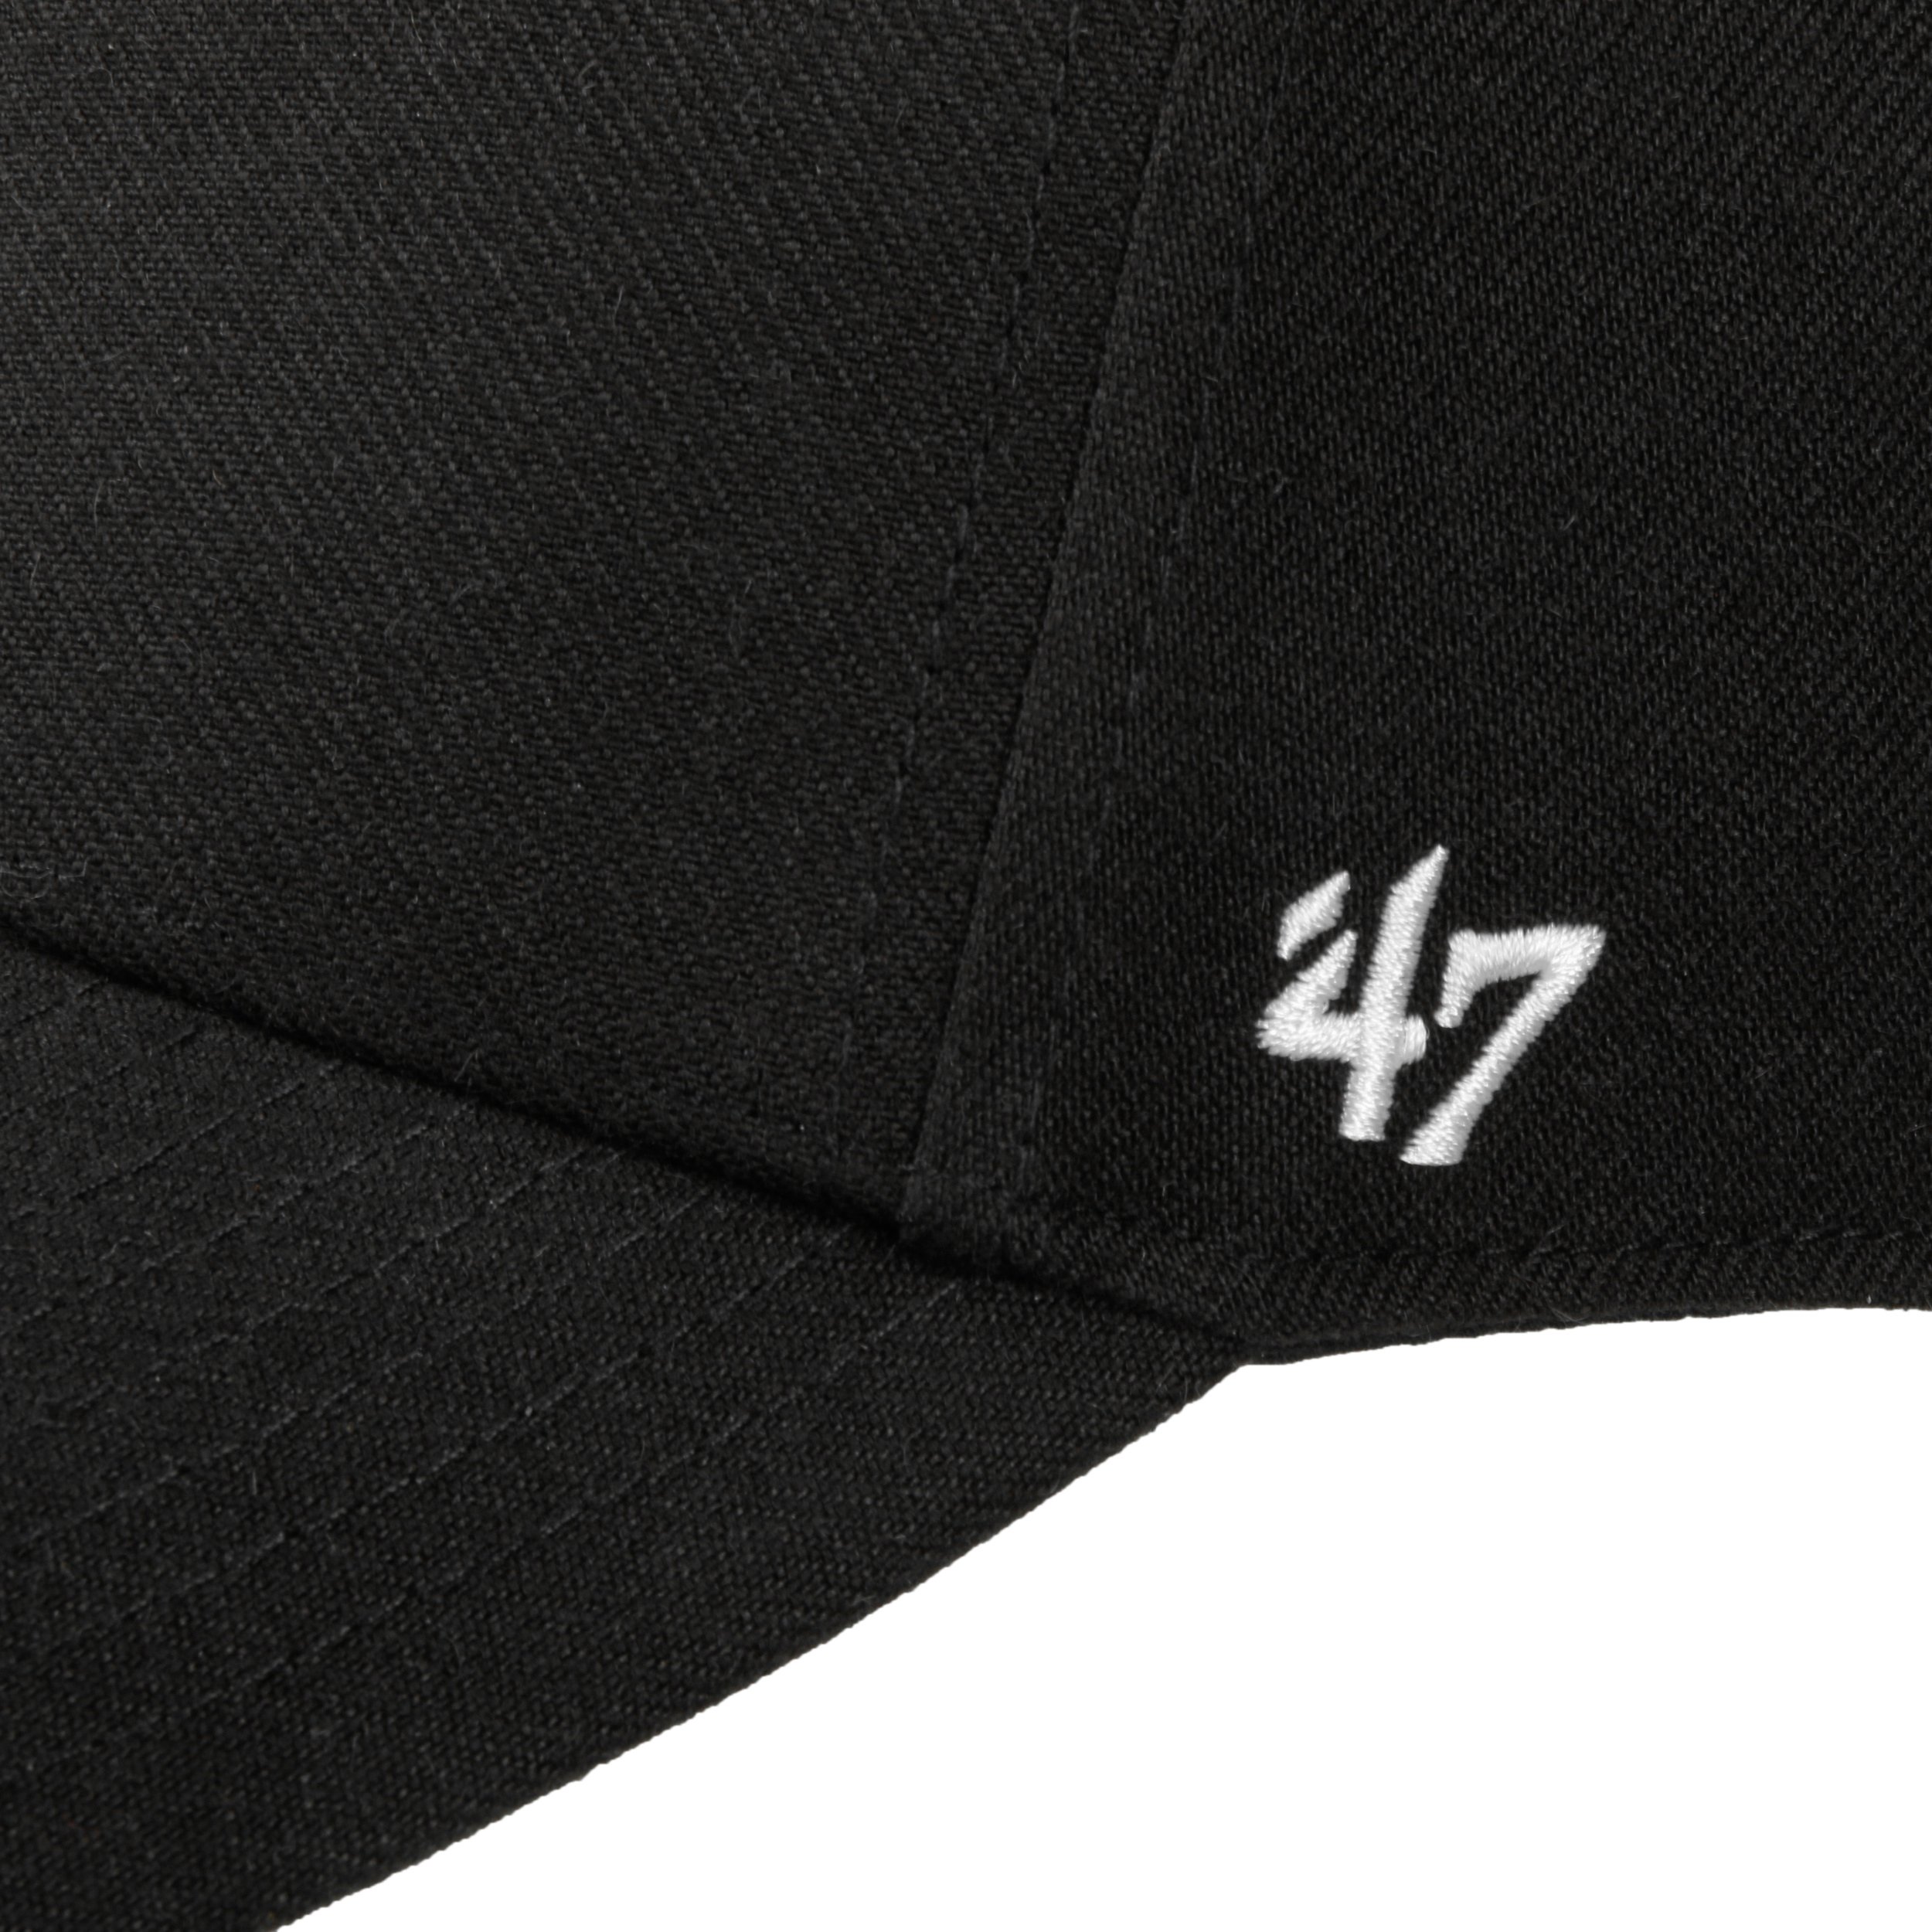 47 Anaheim Ducks NHL Fan Cap, Hats for sale